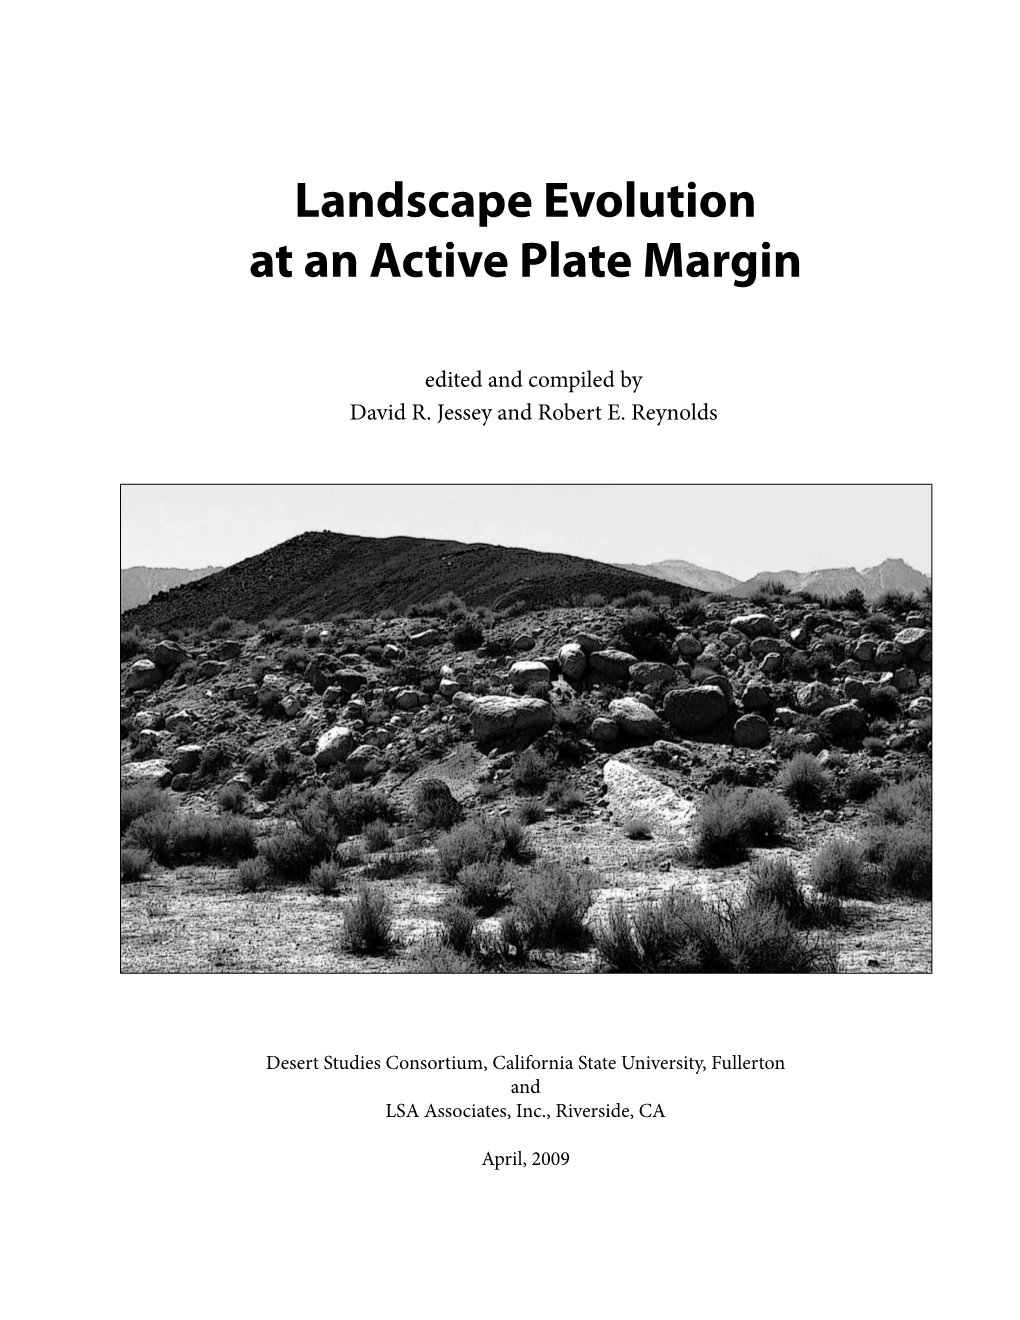 2009 Landscape Evolution at an Active Plate Margin